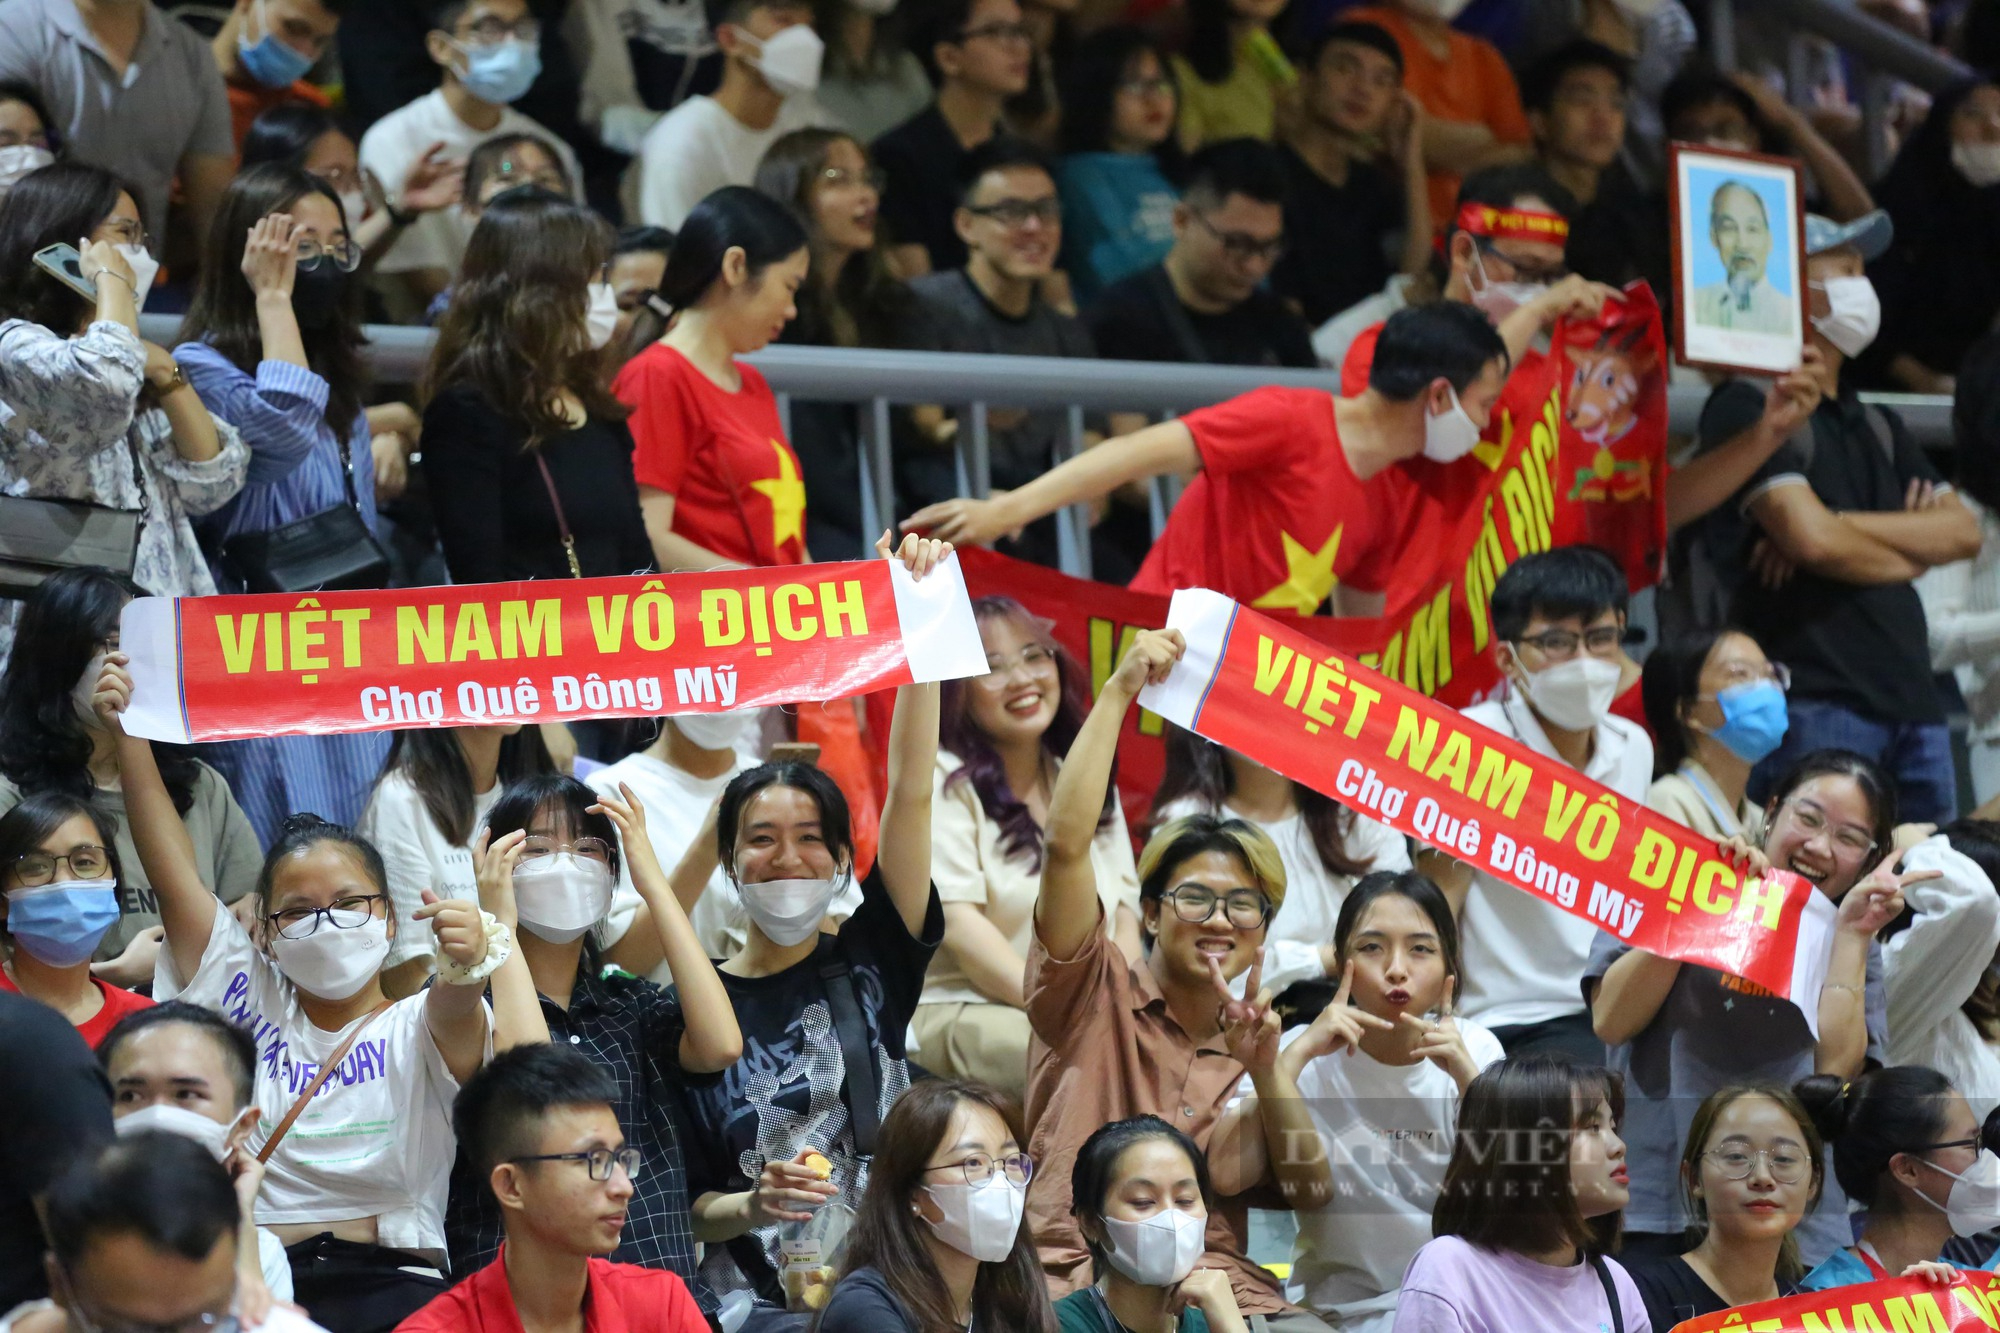 Dàn hot girl cổ vũ cực nhiệt trong chiến thắng của đội tuyển bóng rổ Việt Nam - Ảnh 8.